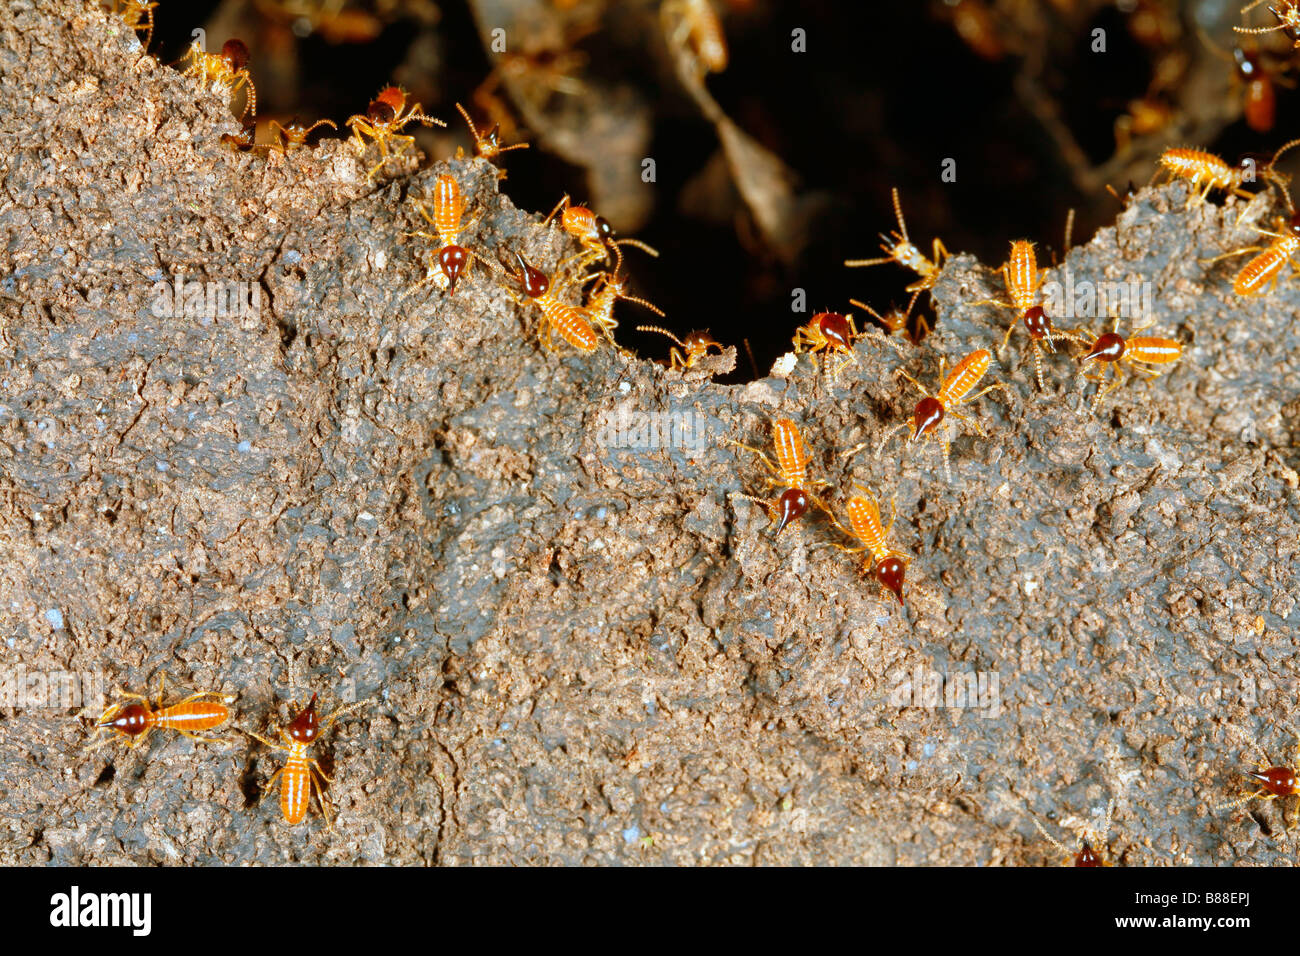 Nasute termites on a damaged termite nest Stock Photo